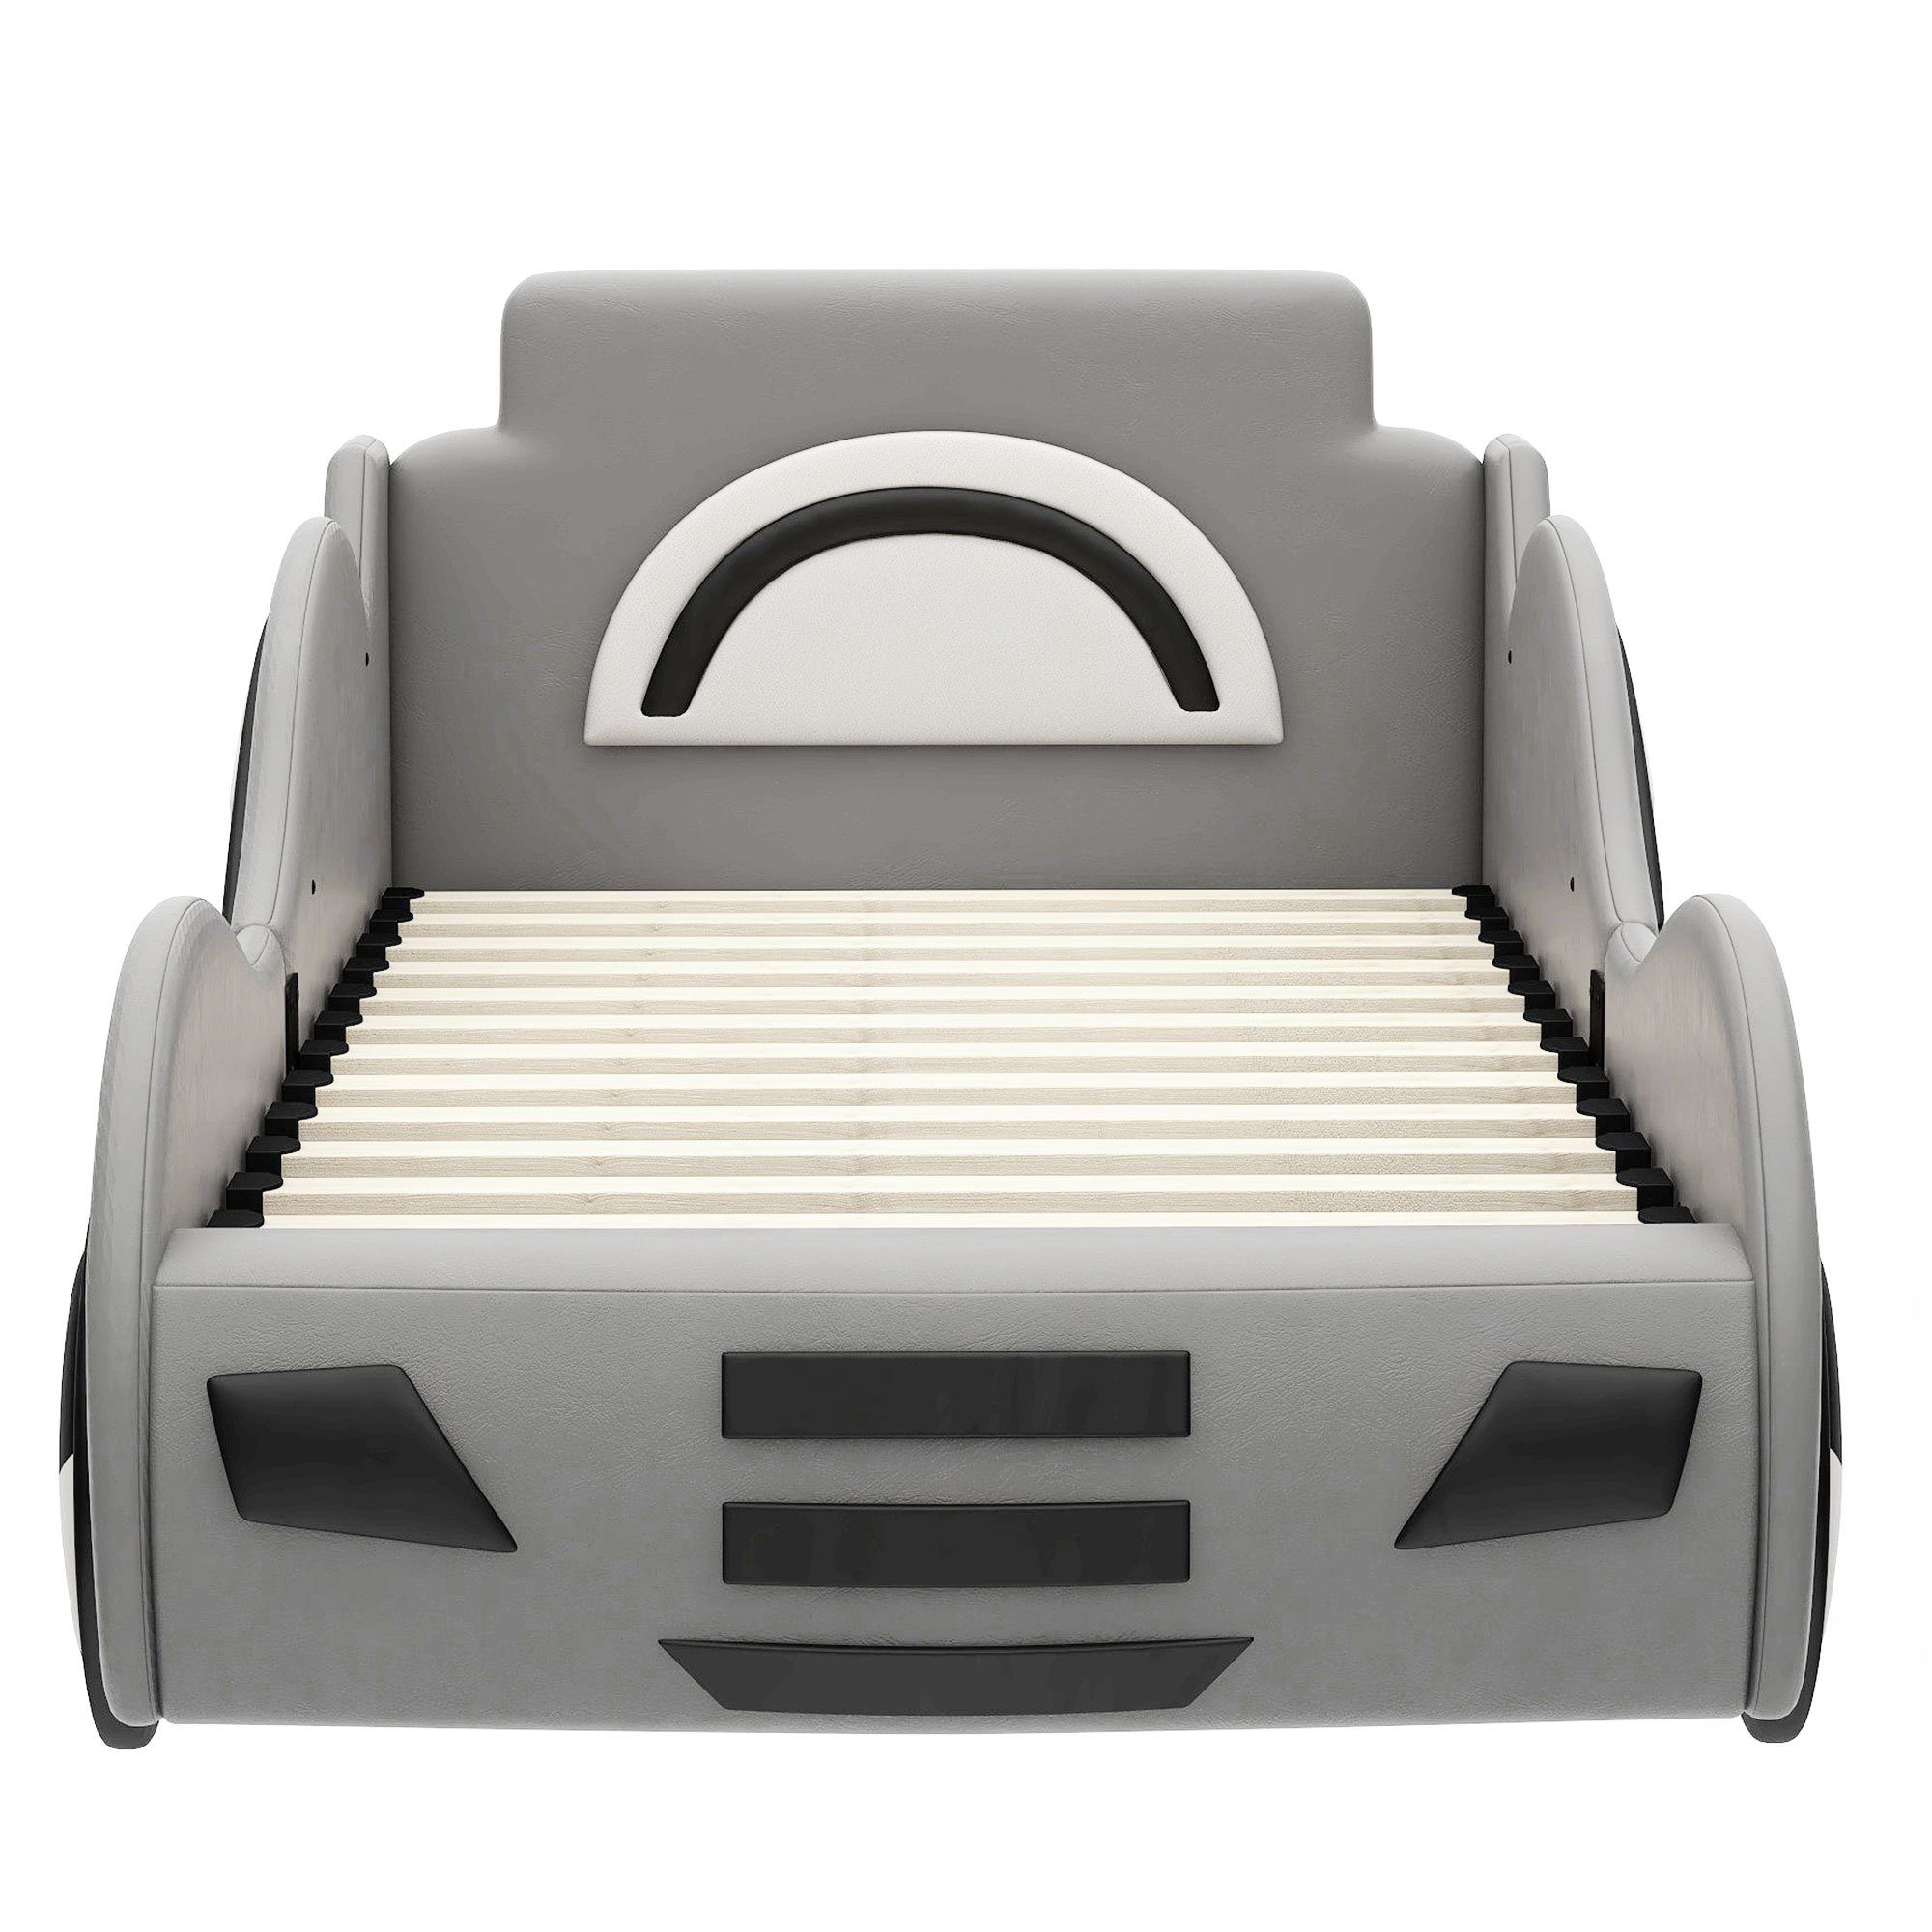 Fangqi Autobett 90x200cm Automodell Einzelbett Lattenrost Kinderbetten, großem Grau mit Bettkasten Autobetten, unter Schwarz/Weiß) (Familienbett,Auto-Modellbetten